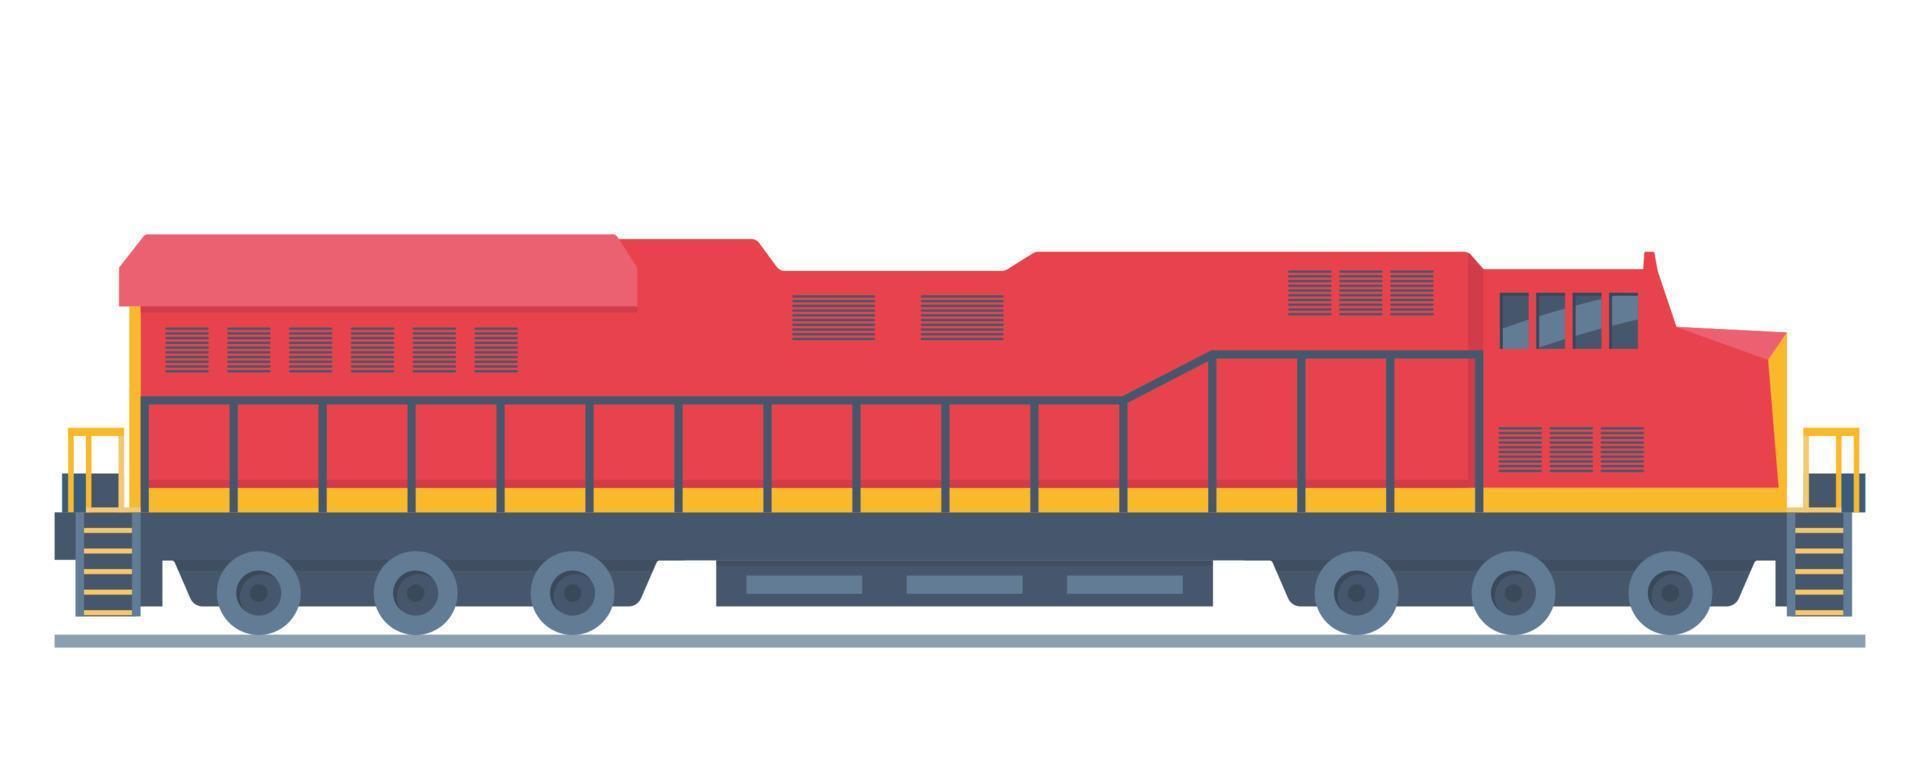 Lokomotive, Schienenfahrzeug zum Ziehen von Zügen. Eisenbahnmotor, Energie, Bewegung oder Kraft zu erzeugen, Kraft und Bewegung schieben. flache vektorillustration. vektor